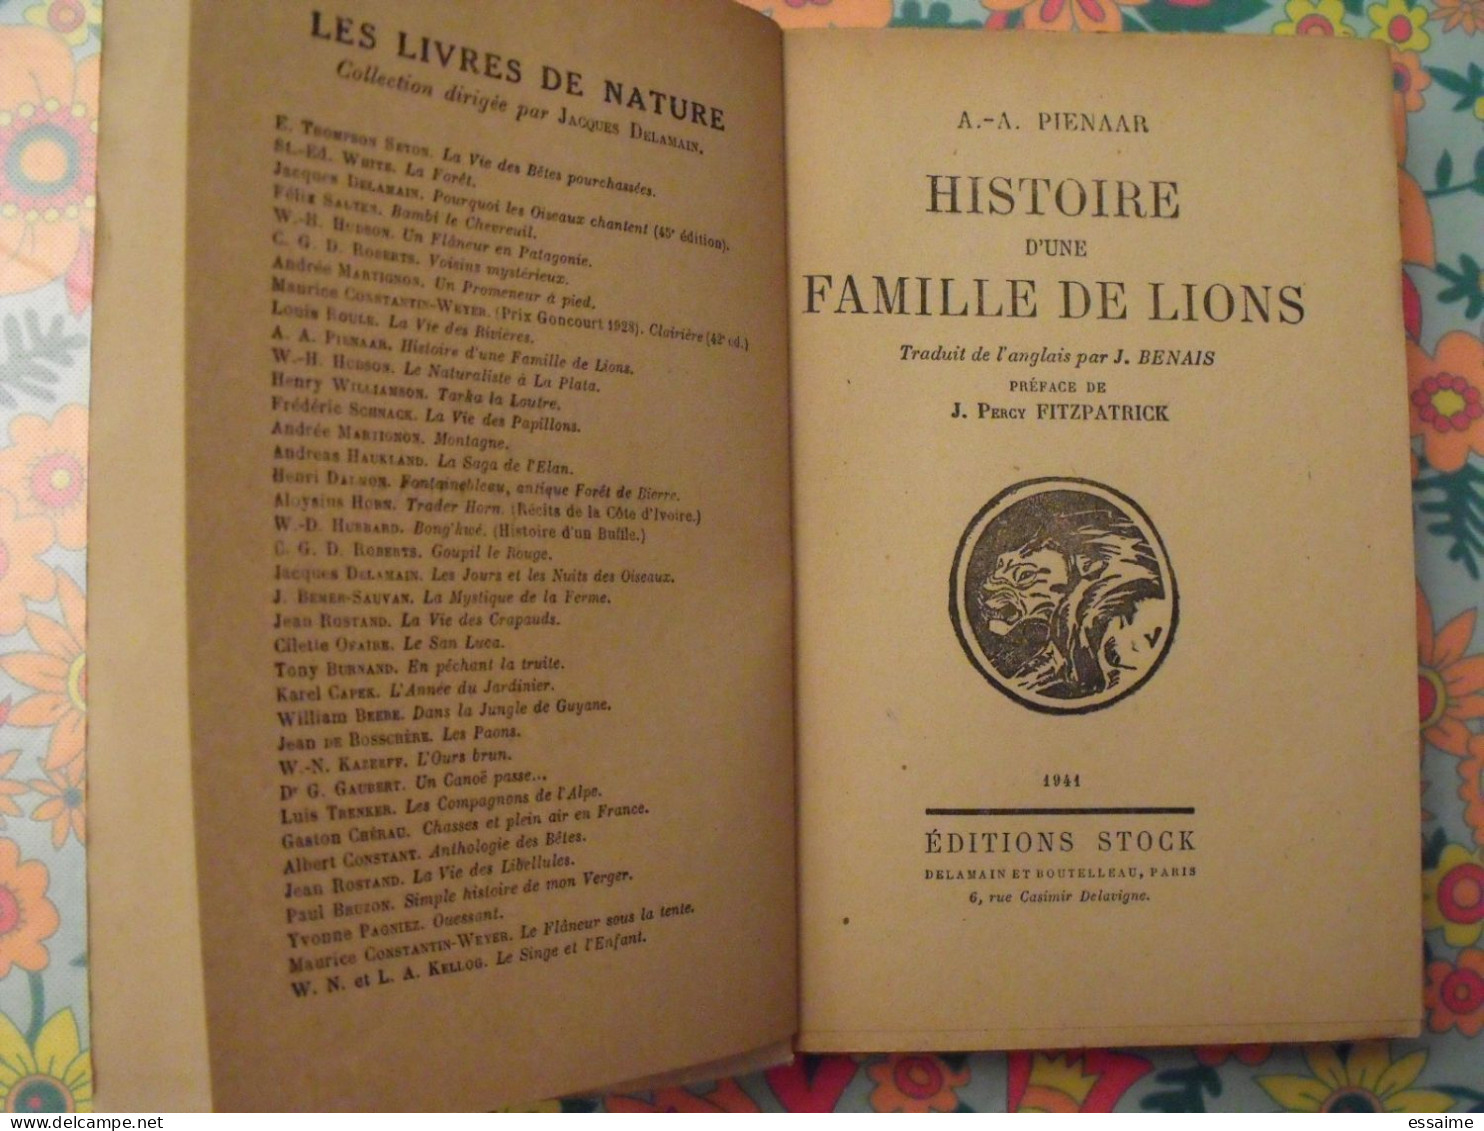 Histoire D'une Famille De Lions. Pienaar. Stock 1941. Delamain. Fitzpatrick - Aventura